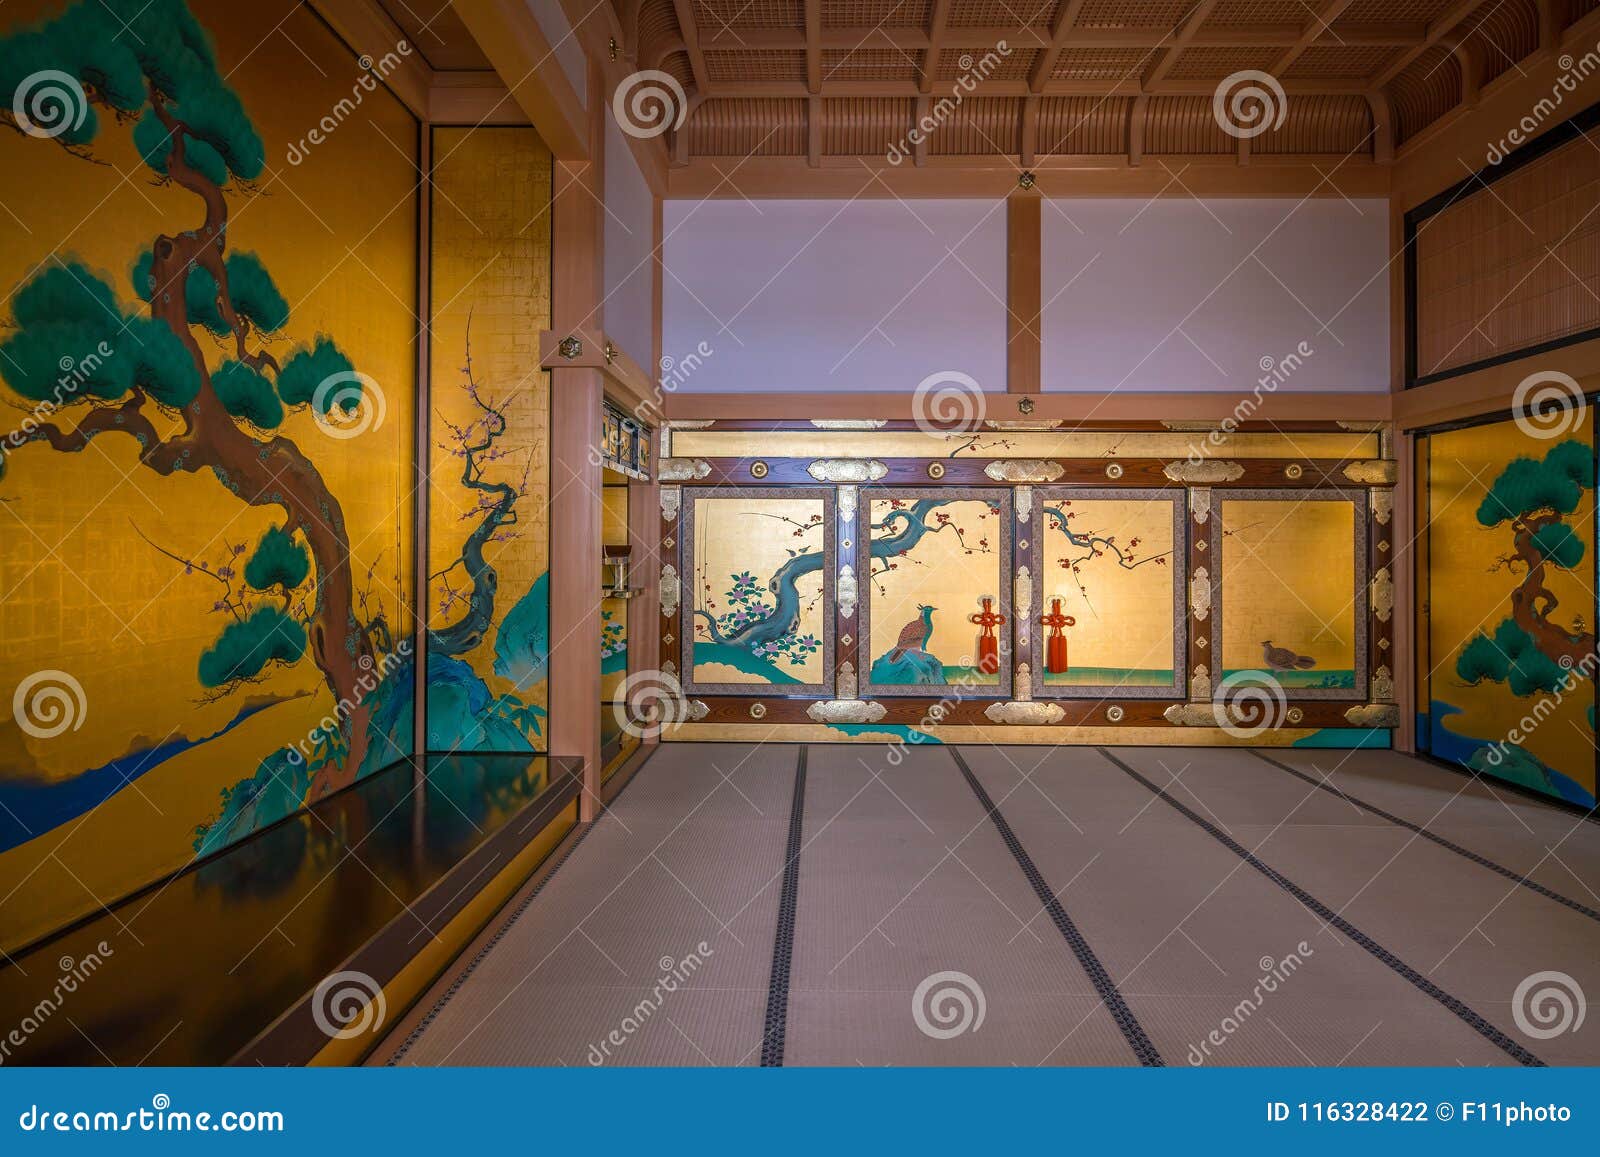 Interior Of Honmaru Palace Of Nagoya Castle Stock Photo